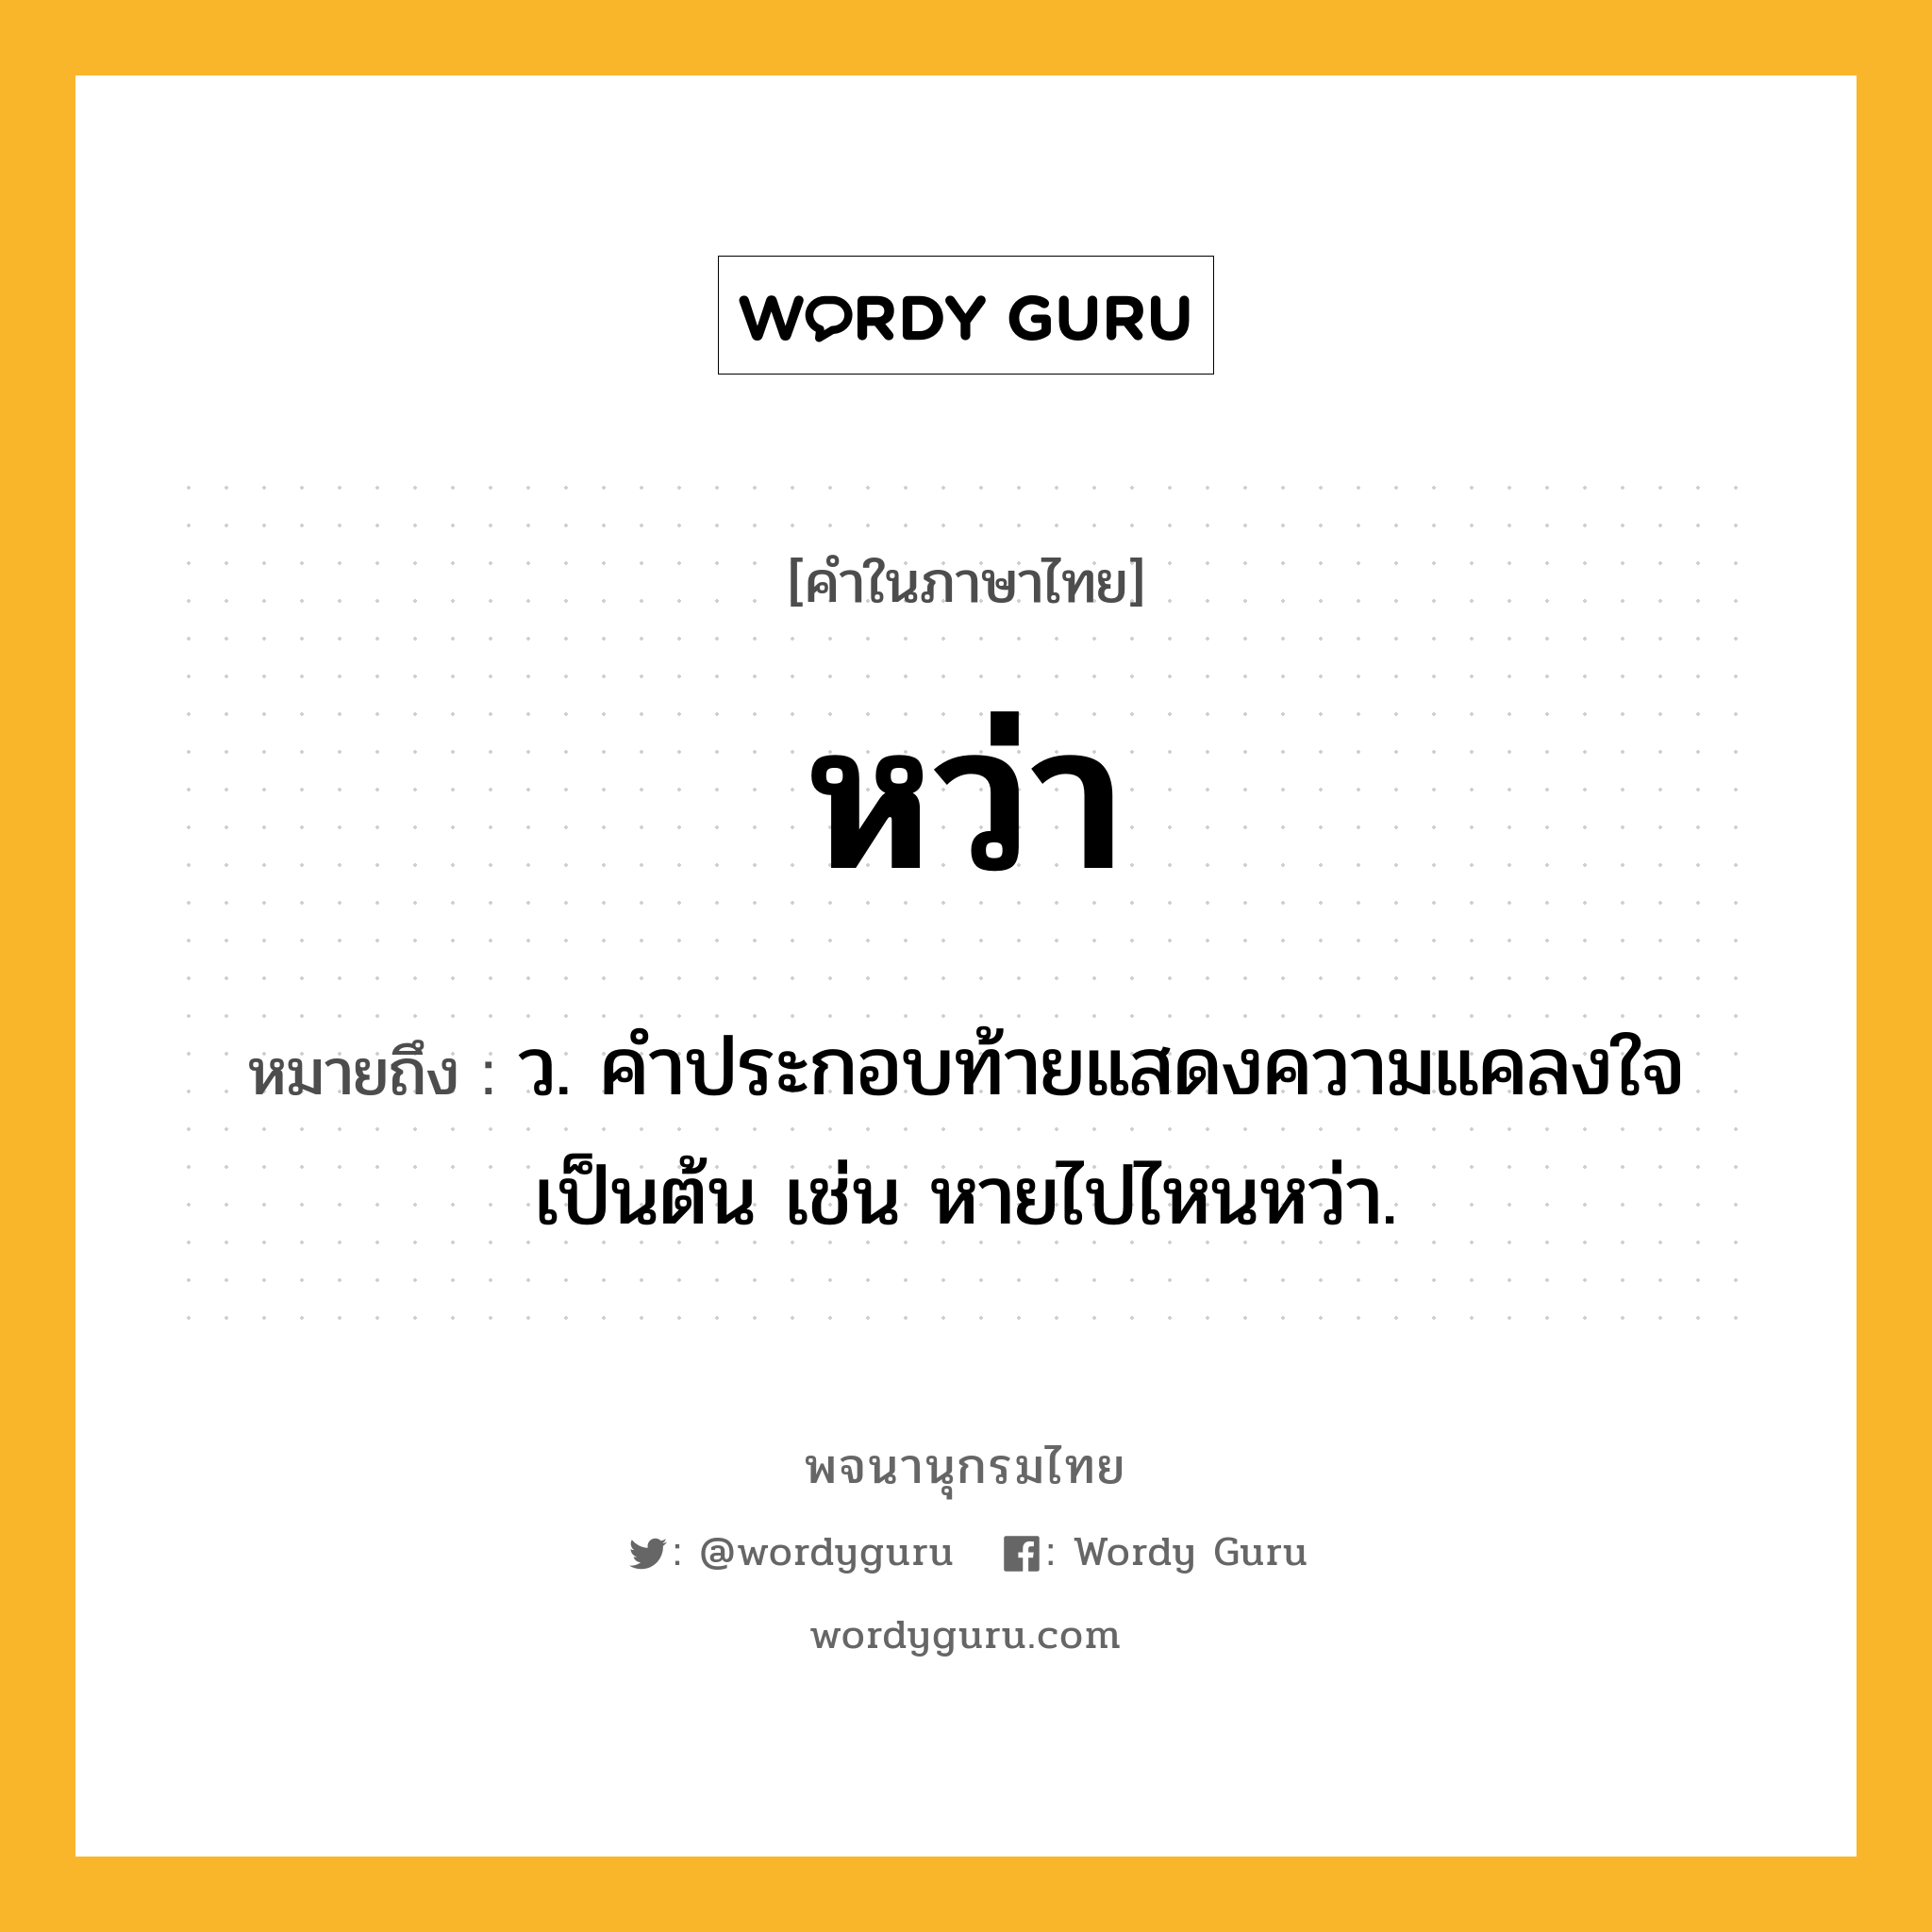 หว่า หมายถึงอะไร?, คำในภาษาไทย หว่า หมายถึง ว. คำประกอบท้ายแสดงความแคลงใจเป็นต้น เช่น หายไปไหนหว่า.